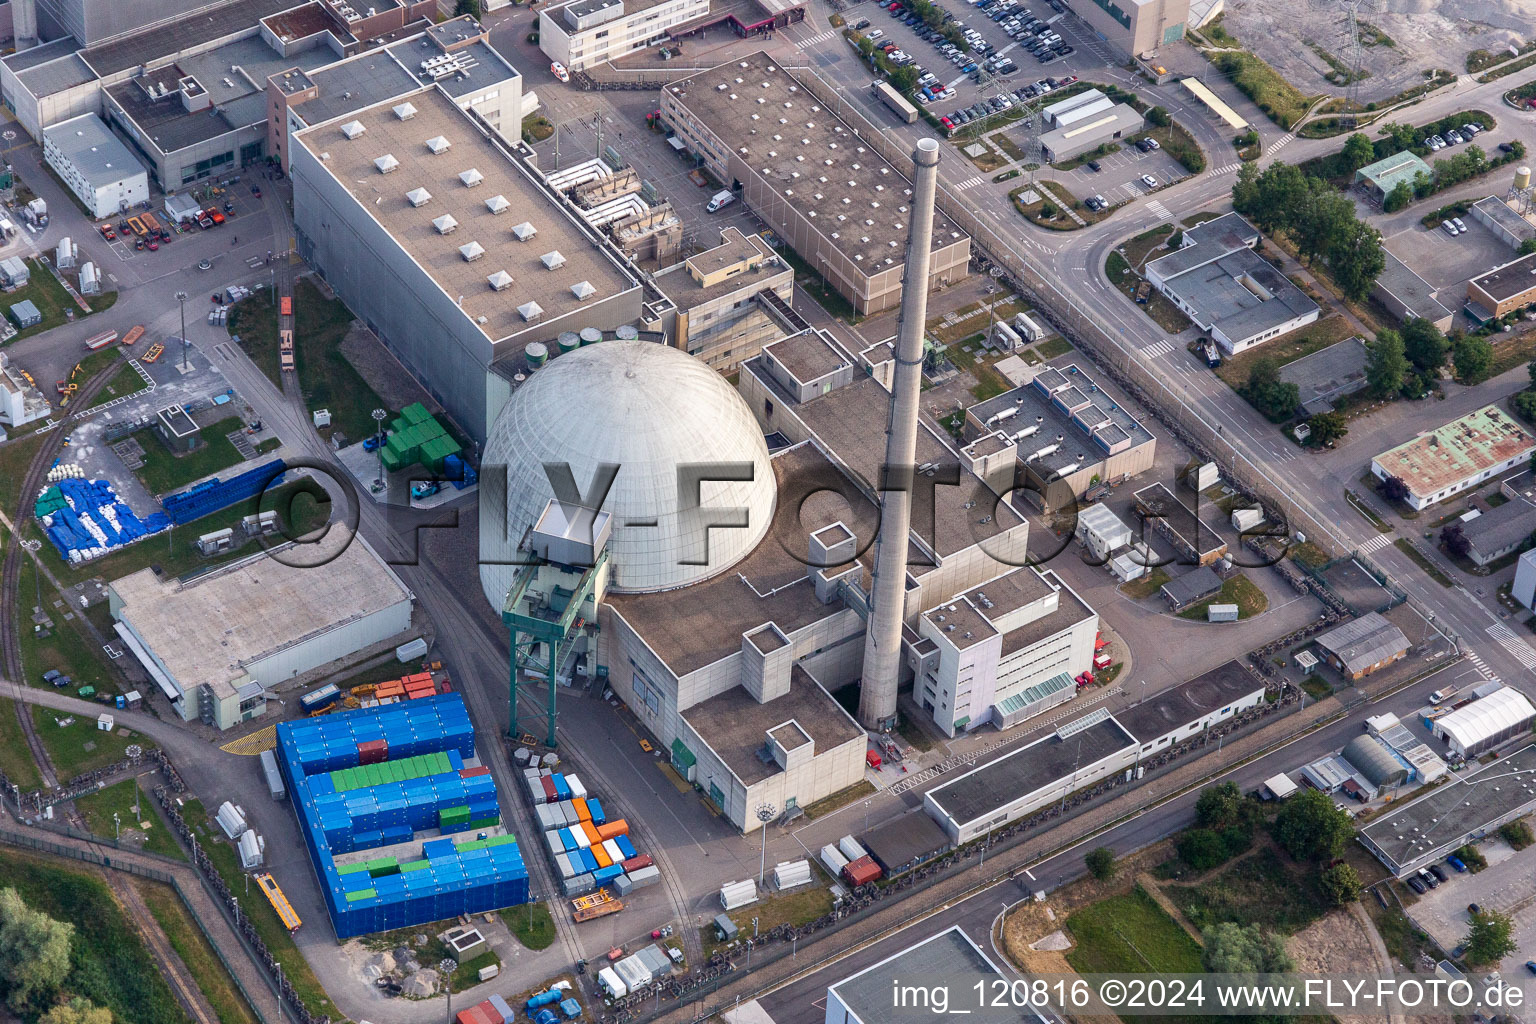 Ancienne centrale nucléaire de Phillippsburg après la démolition pour démolir les deux tours de refroidissement à Philippsburg dans le département Bade-Wurtemberg, Allemagne d'en haut